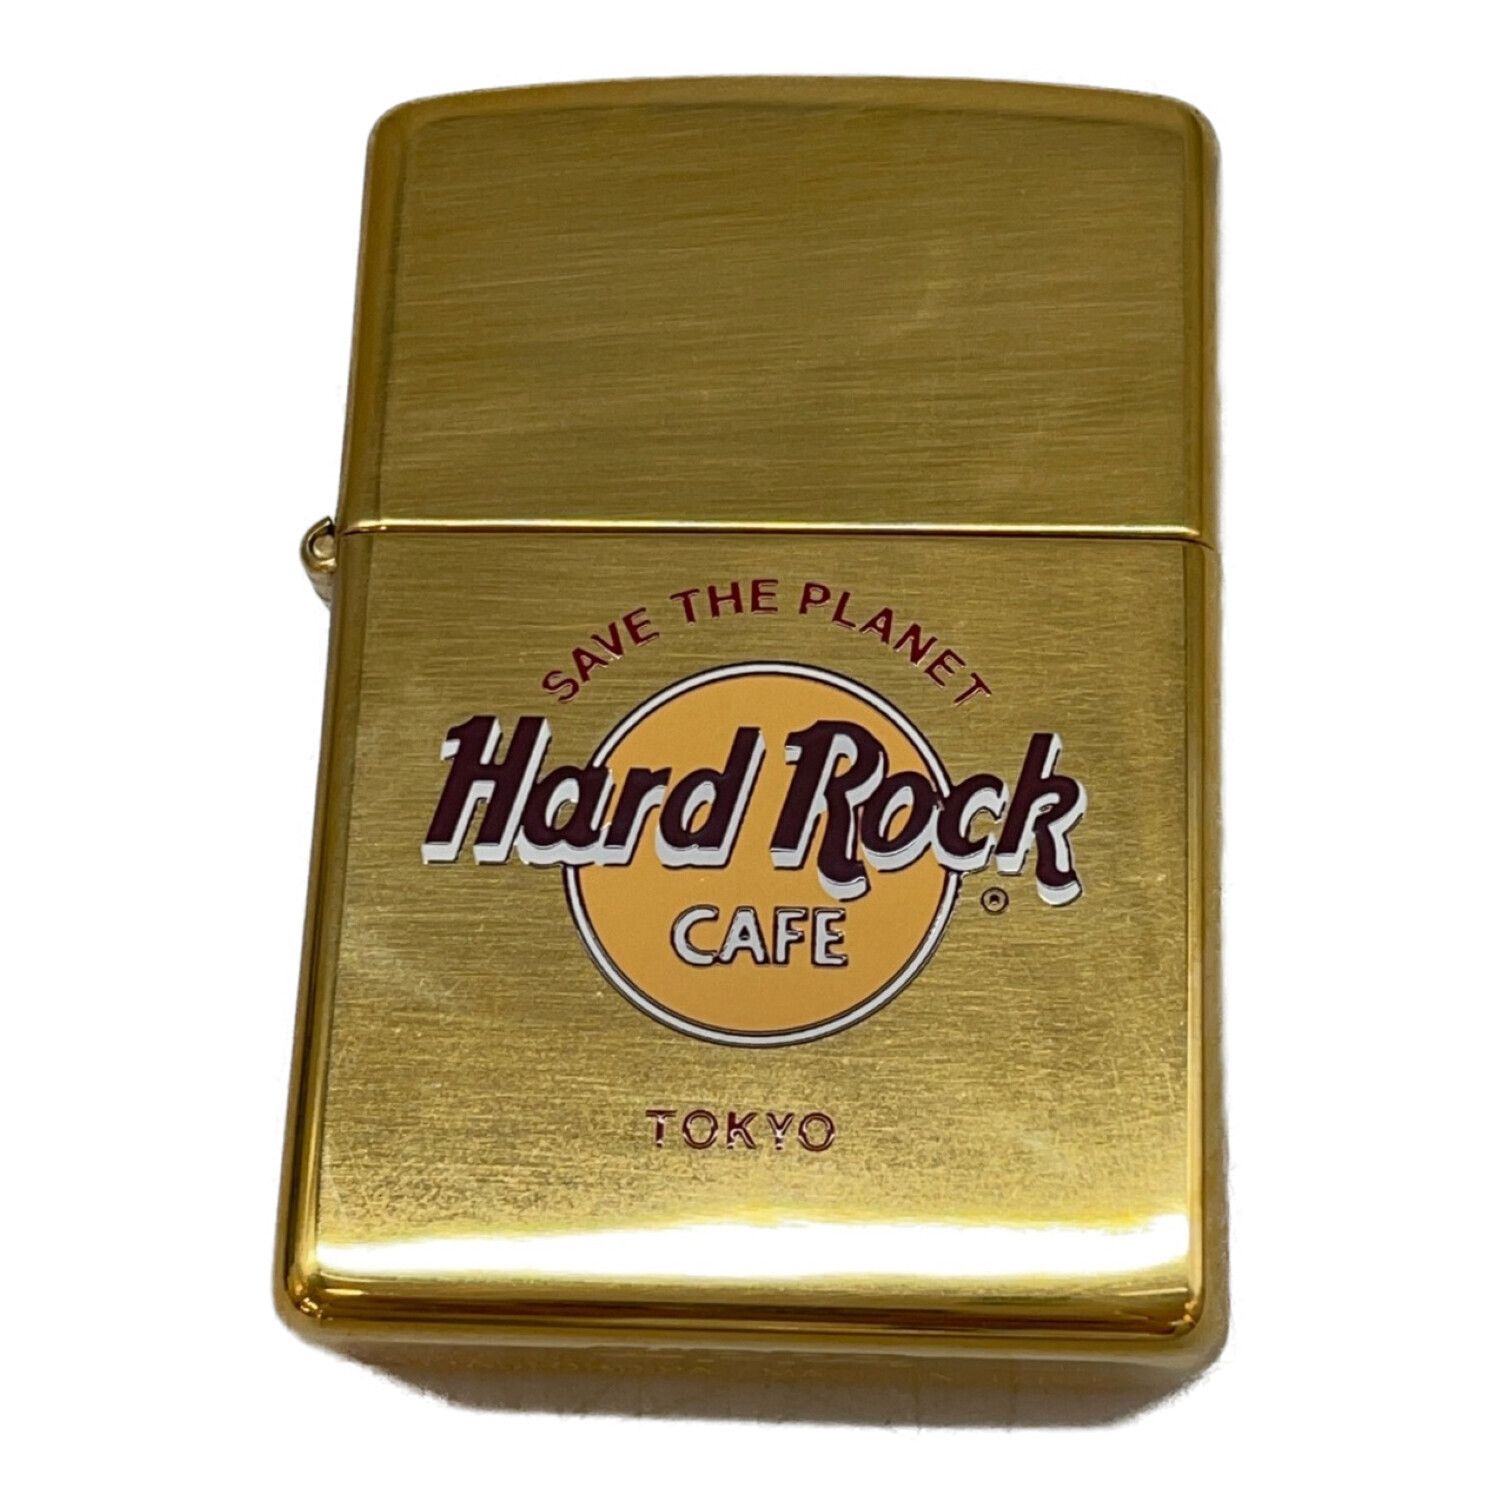 驚きの値段で】 Zippo ジッポー ハードロックカフェ Hard Rock CAFE 